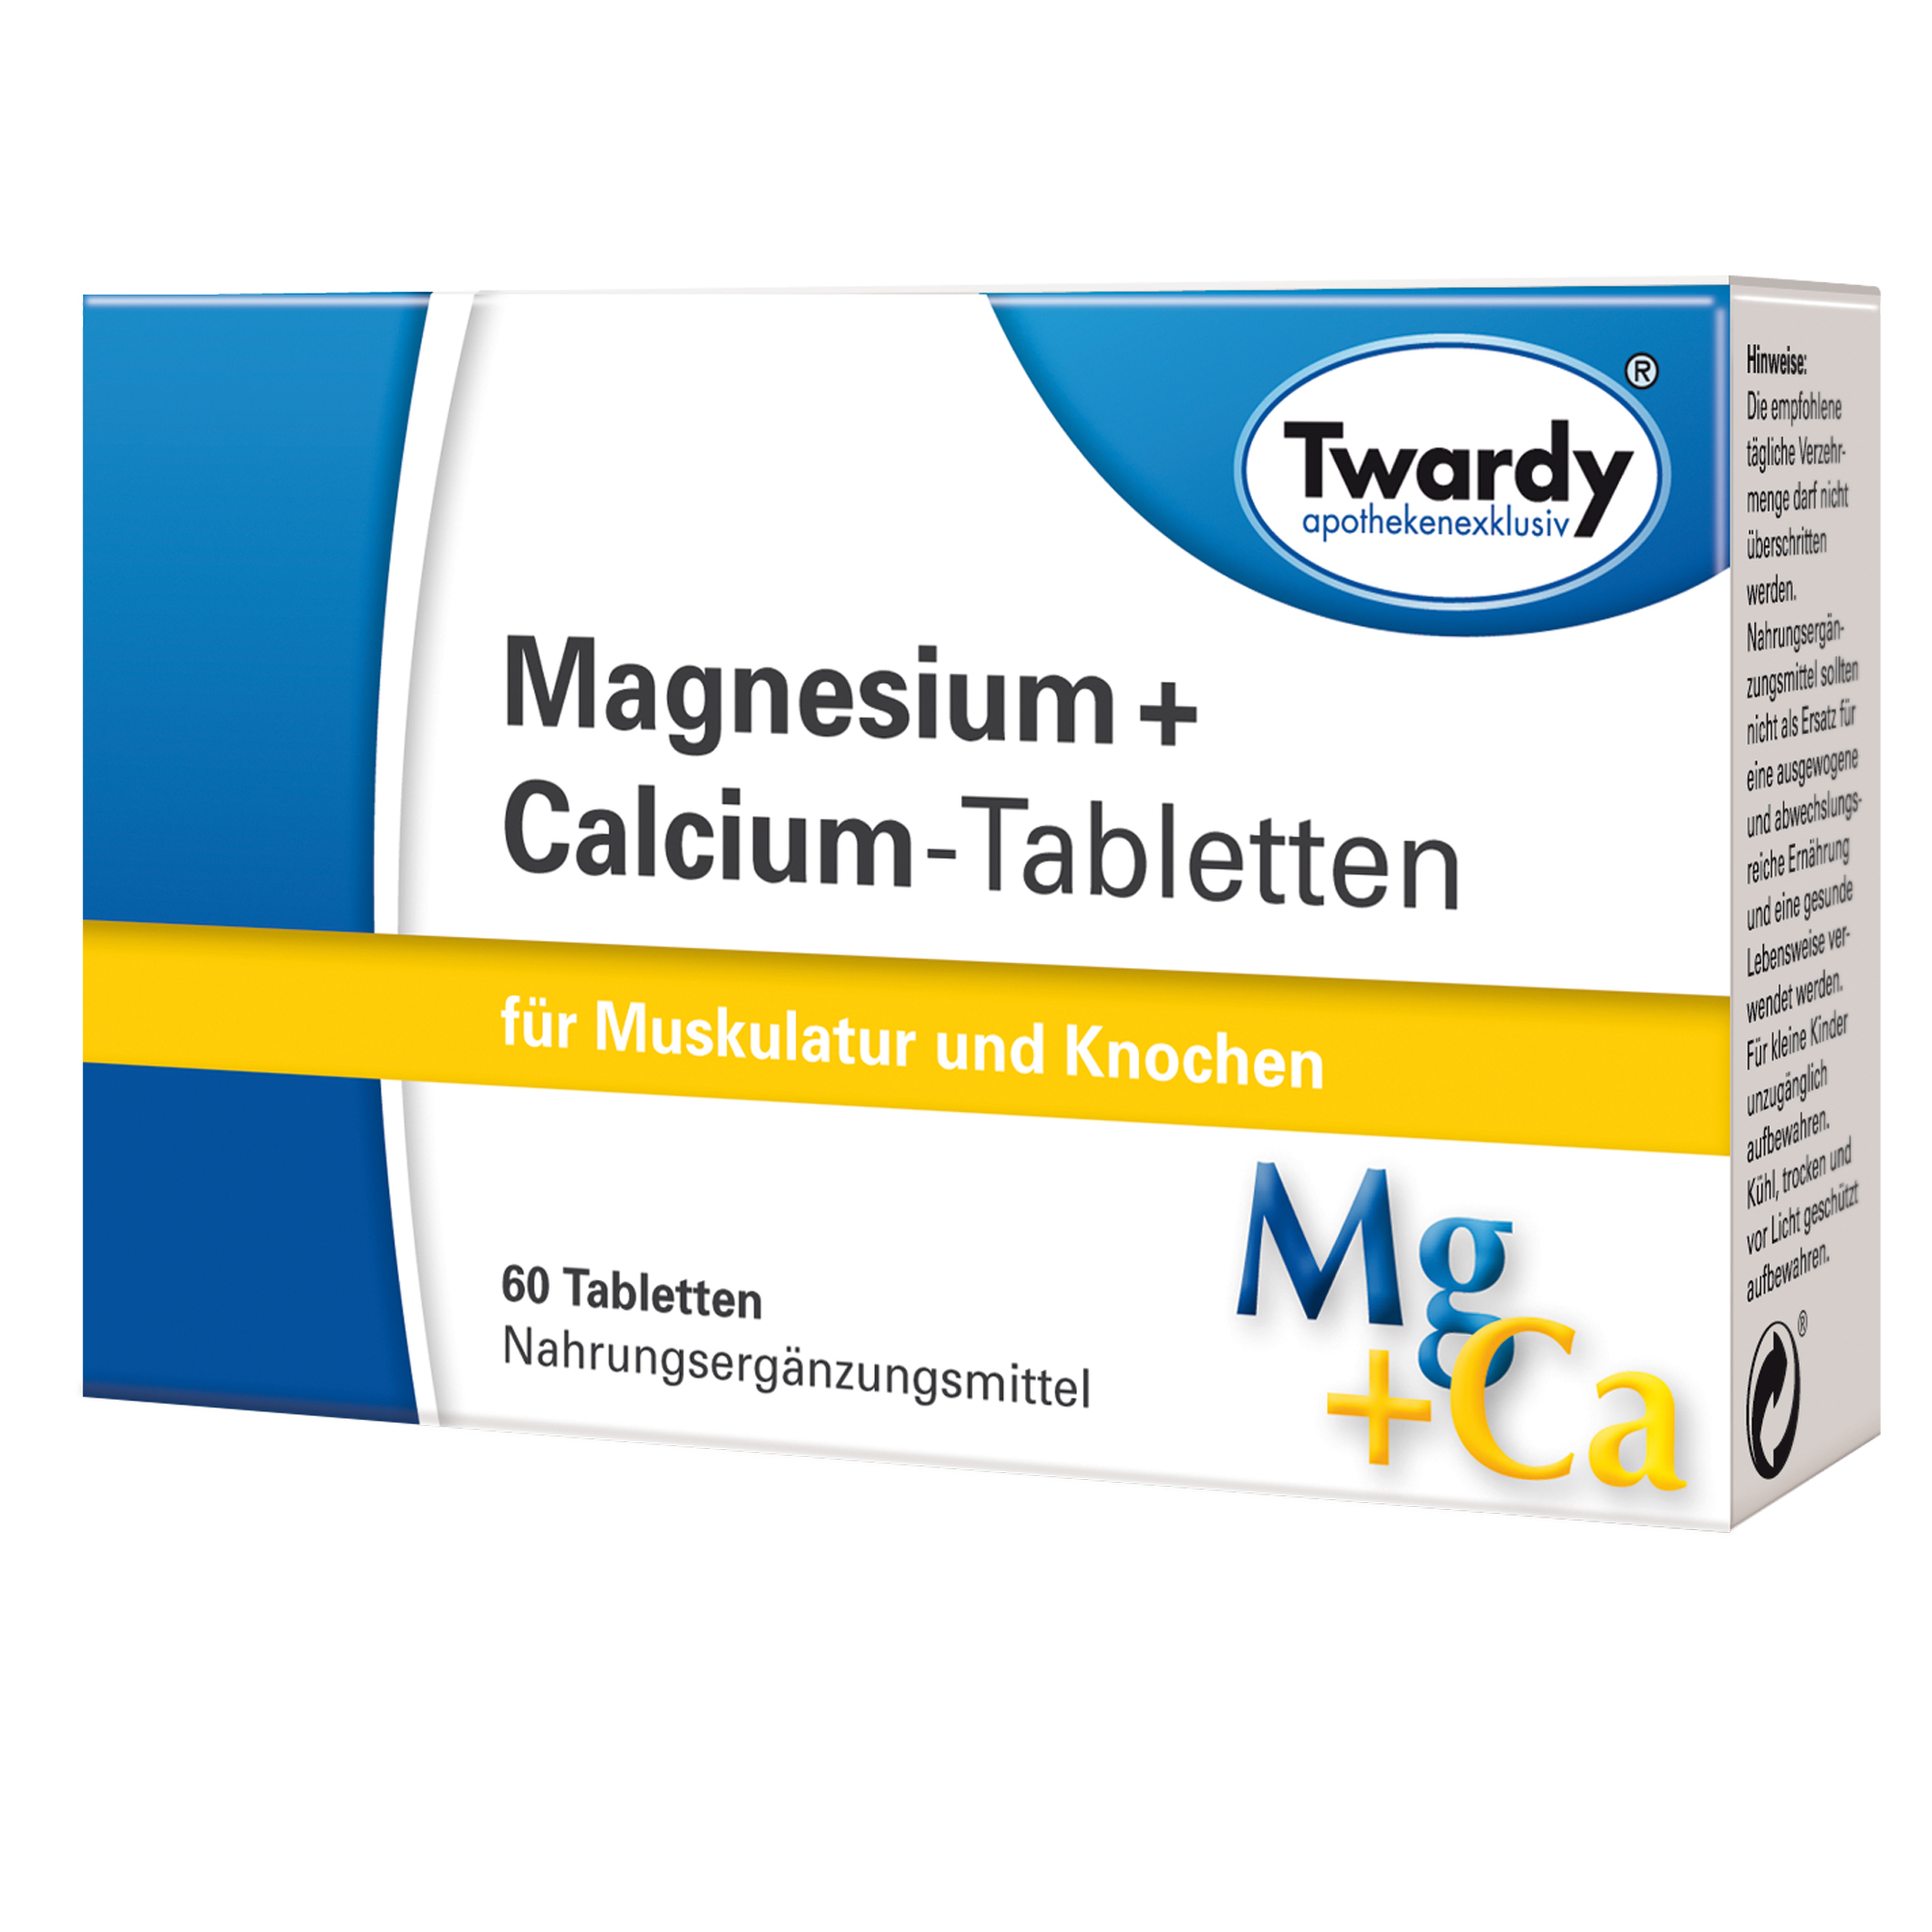 Magnesium + Calcium-Tabletten – PZN 06106314